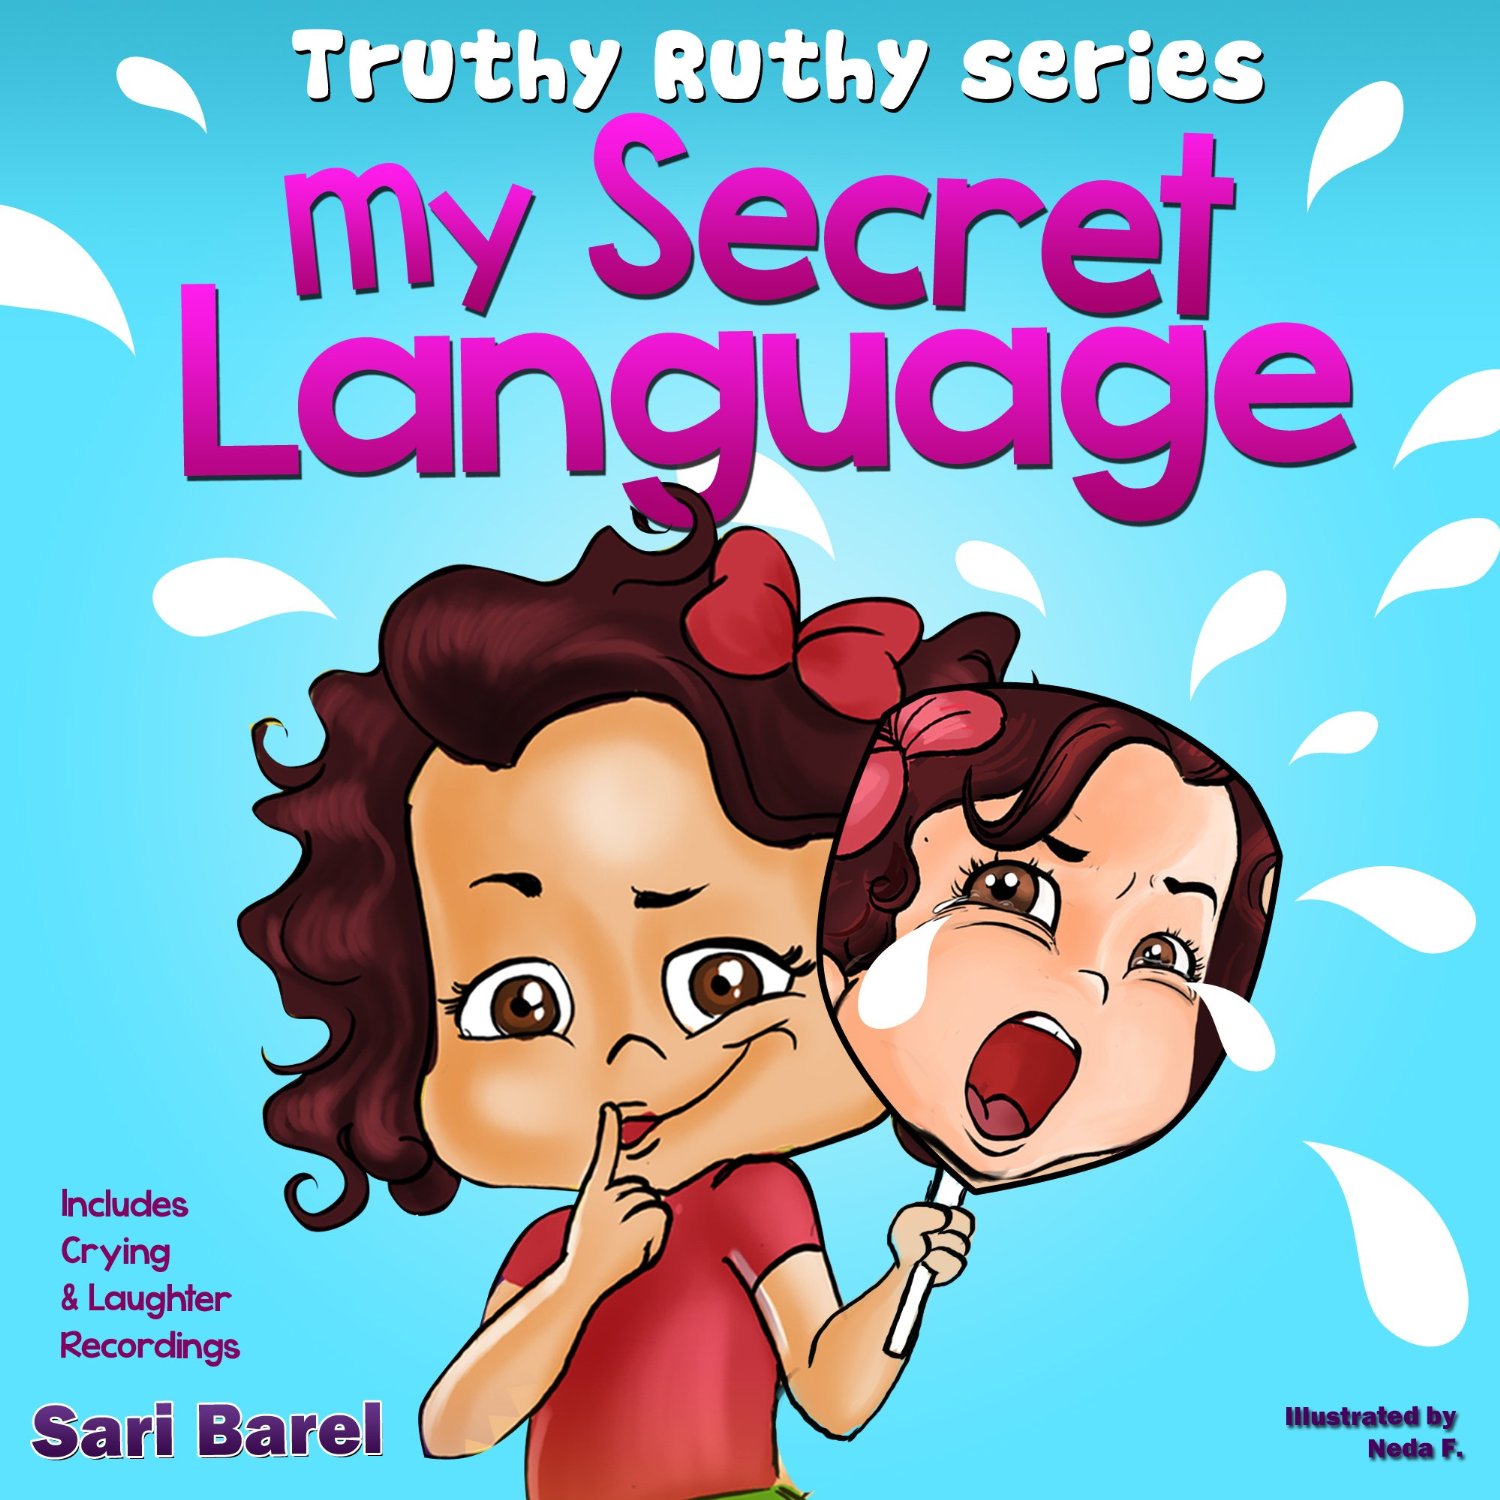 My Secret Language by Sari Barel